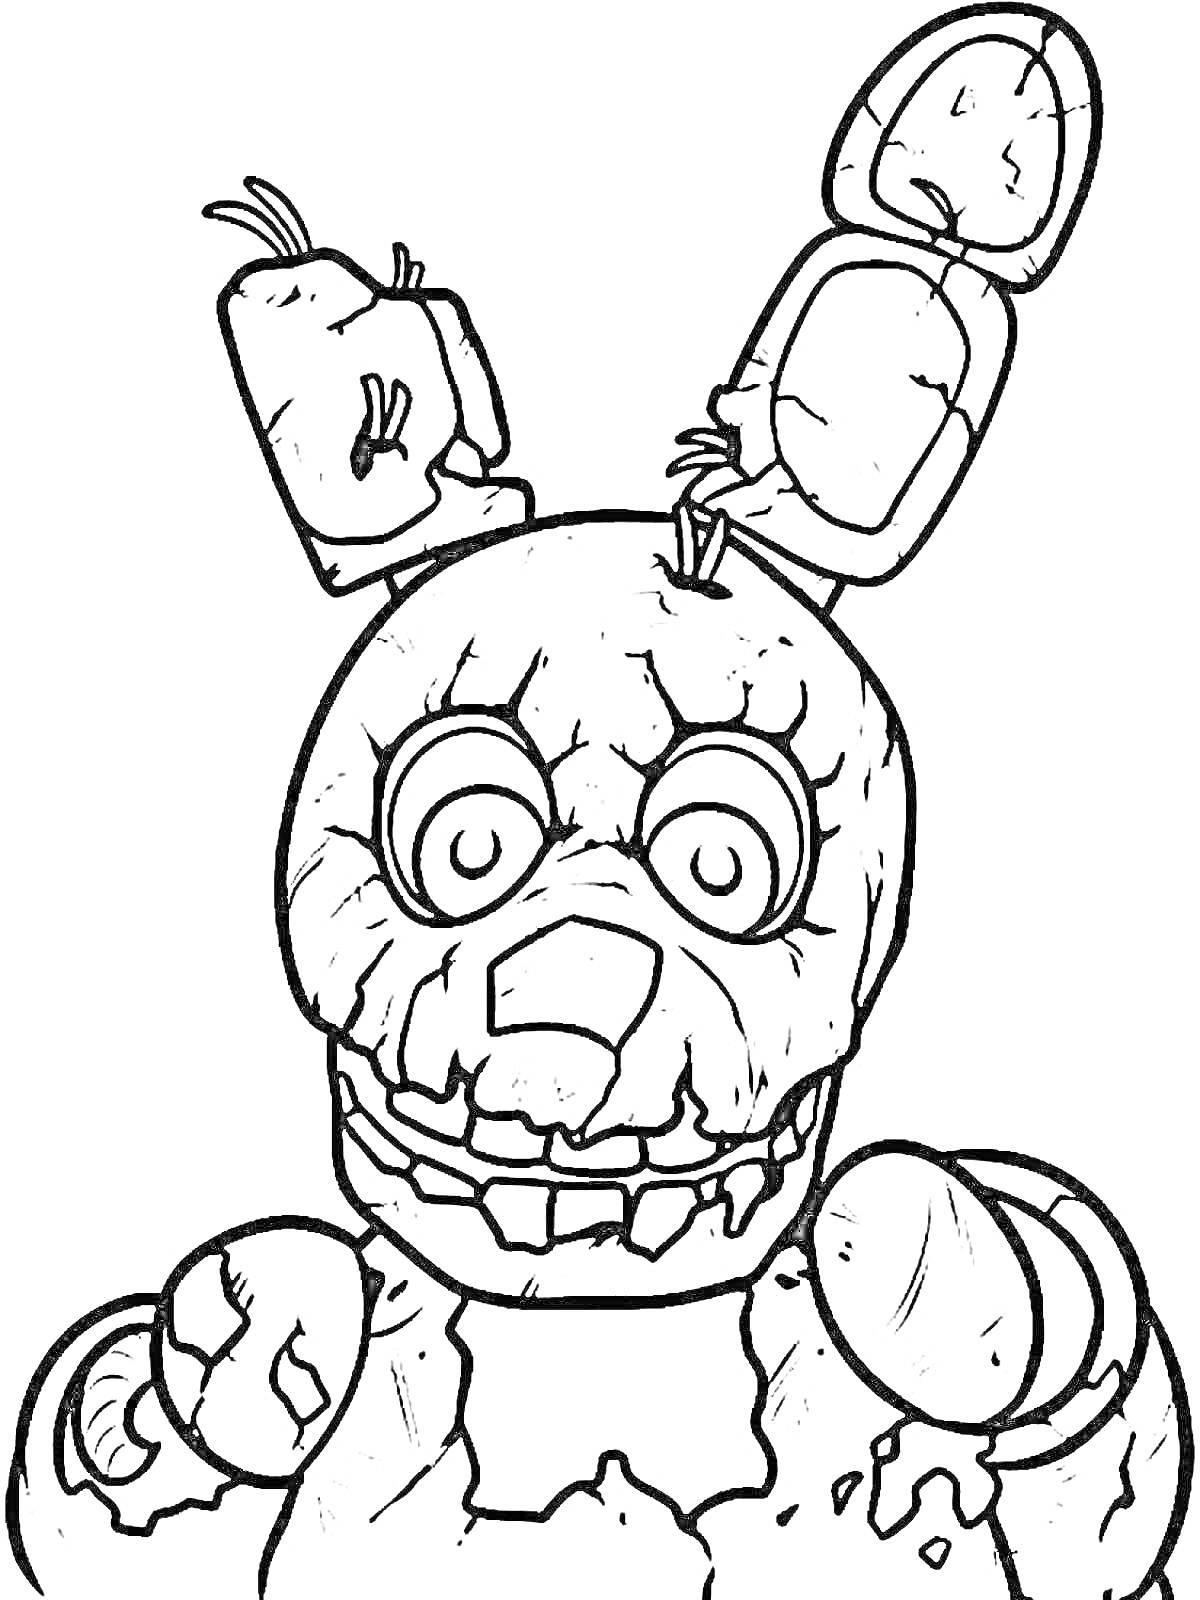 Раскраска Мишка Фредди с разорванными ушами и поломанным телом